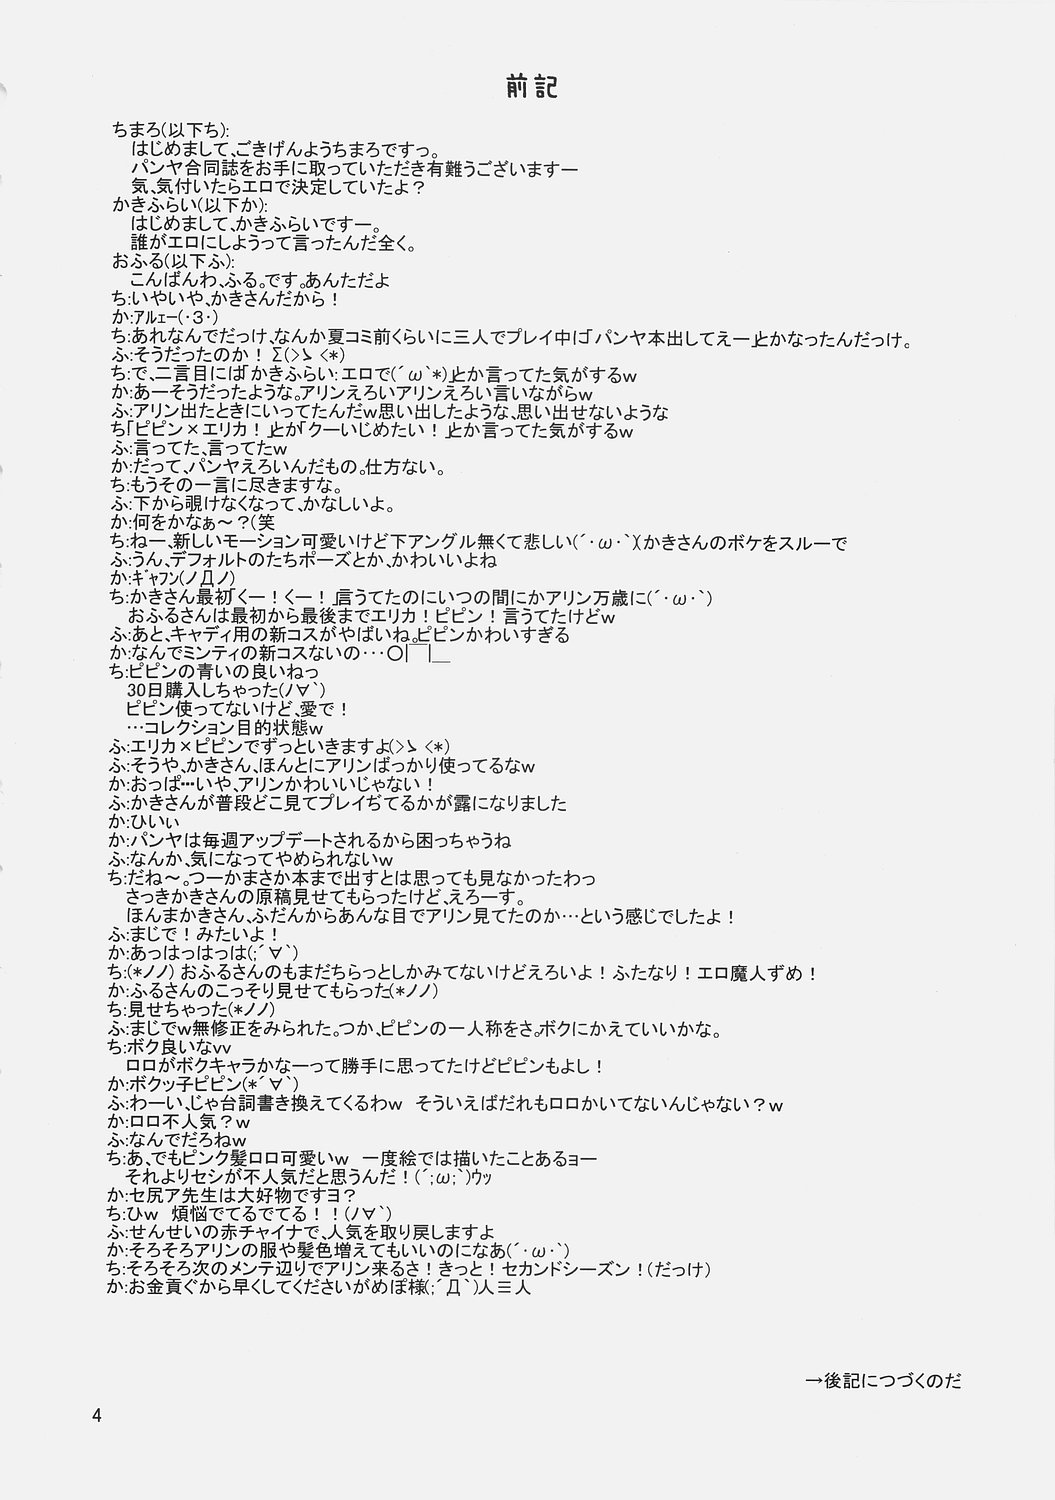 (ComiComi9) [Umi No Sachi Teishoku, Chimaroni?, Fake fur, (Kakifly, Chimaro, Furu)] PanPanPangya (Sukatto Golf Pangya) page 3 full